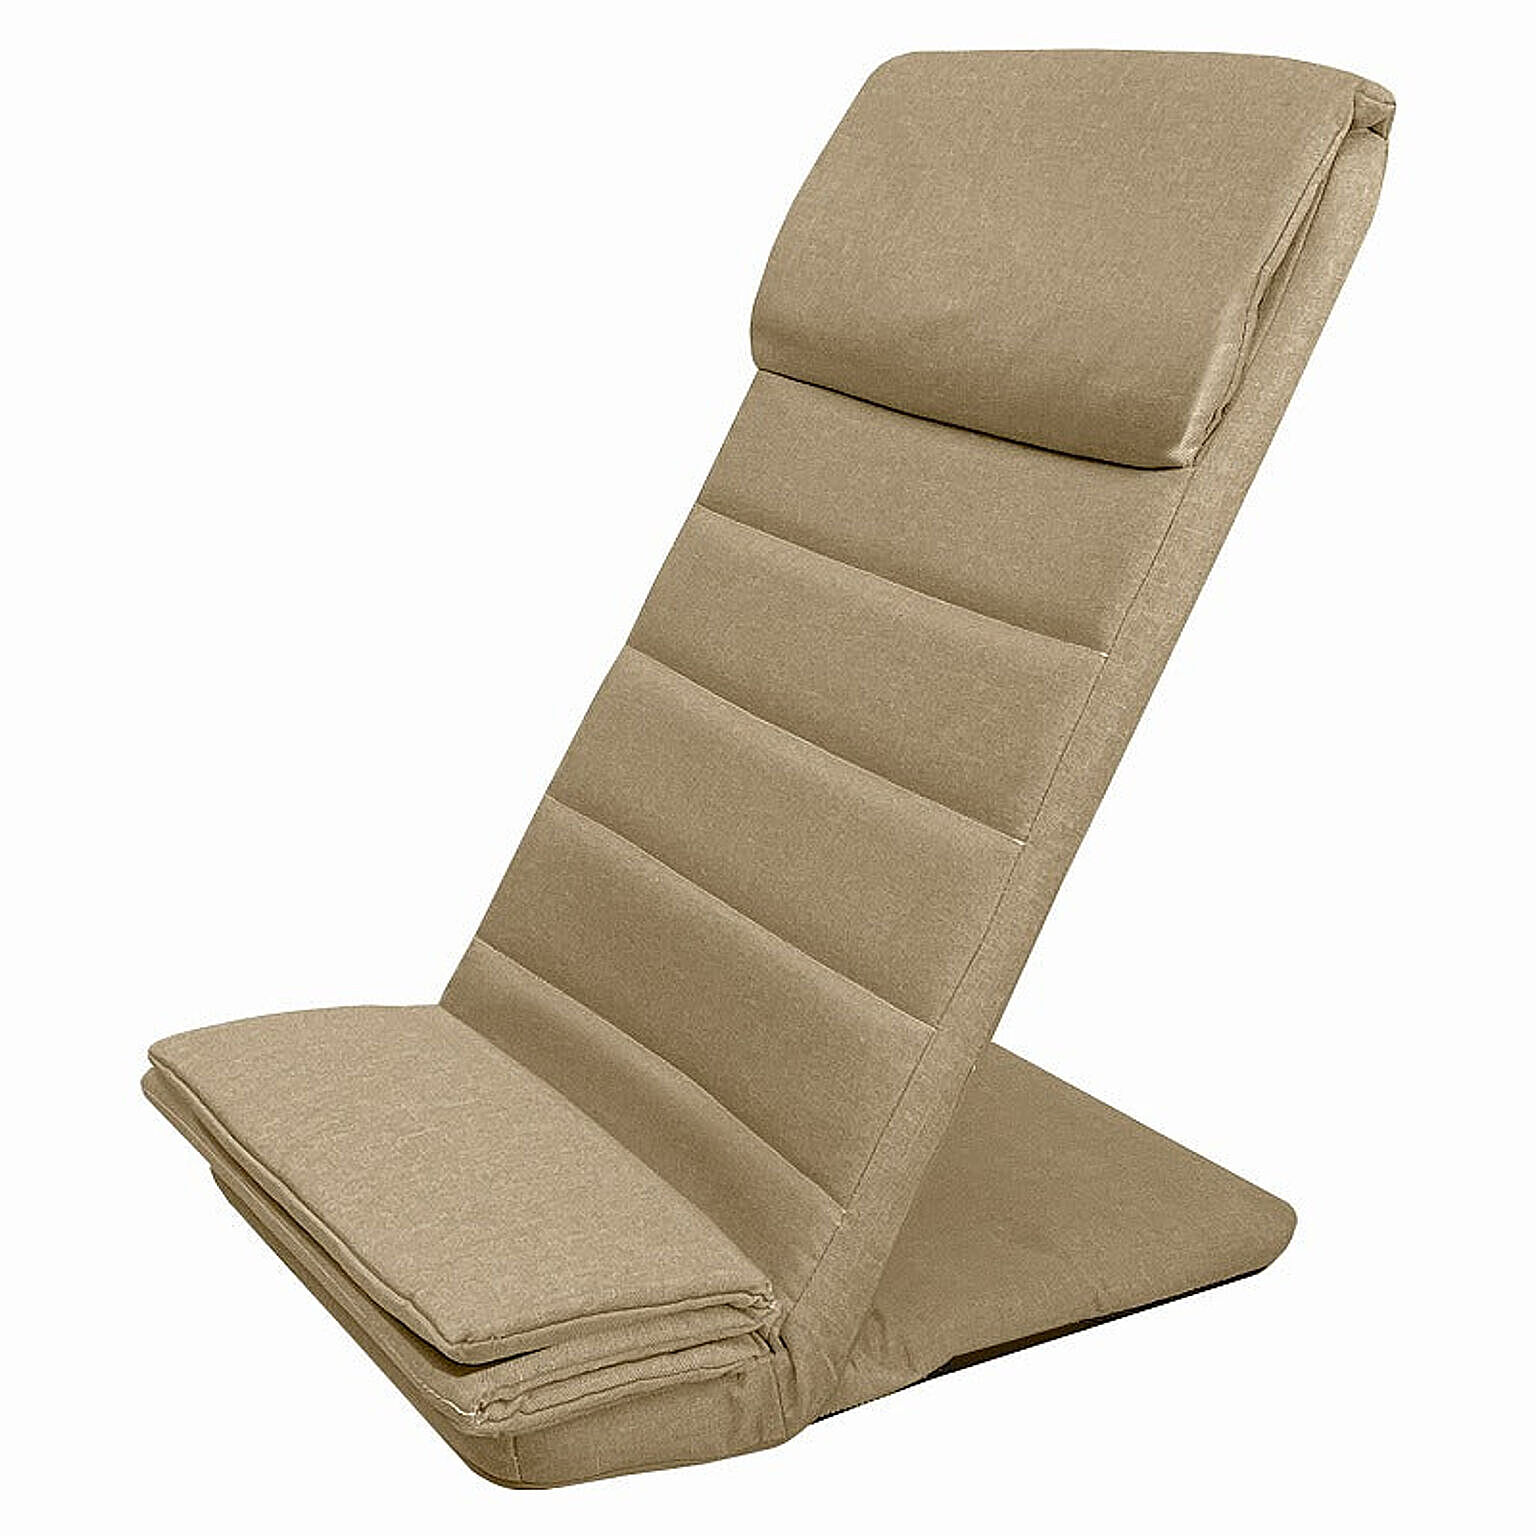 スリム座椅子 うすくて軽い 高さ69cm 犬用スロープ ペットステップ コンパクト収納 座面のうすい ペットスロープにも使用できる 座椅子 F-1887